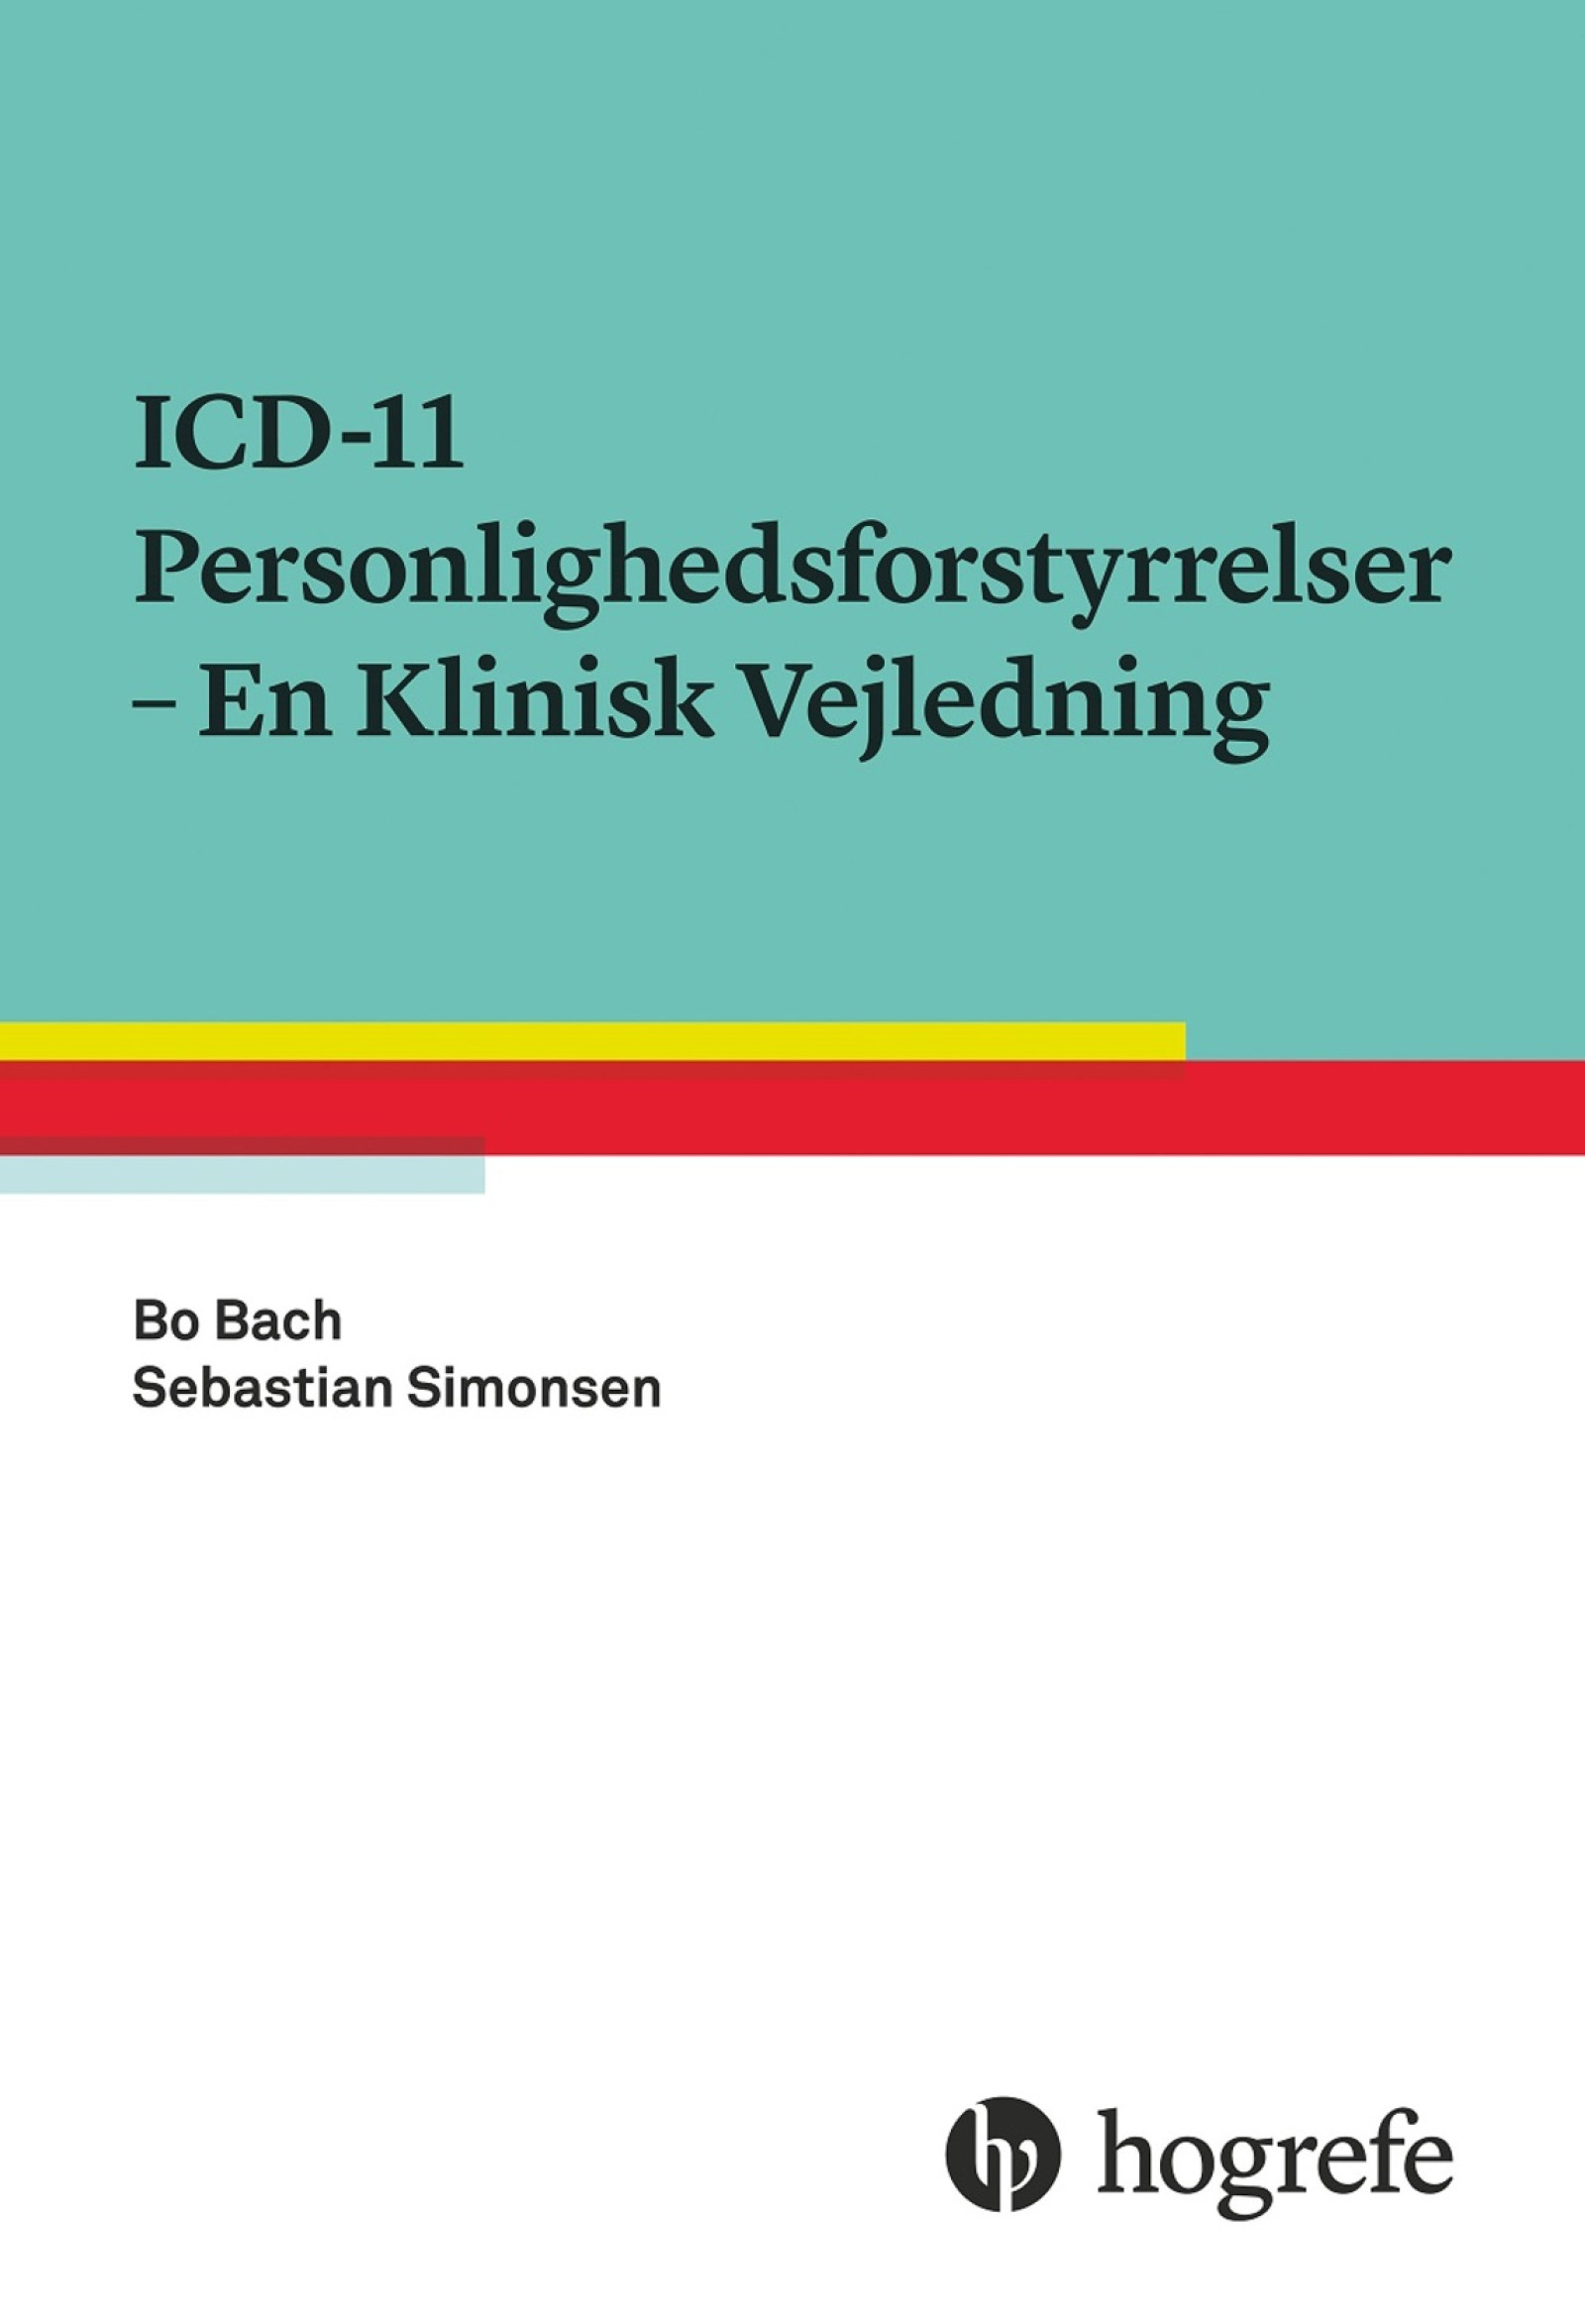 ICD-11 personlighedsforstyrrelser